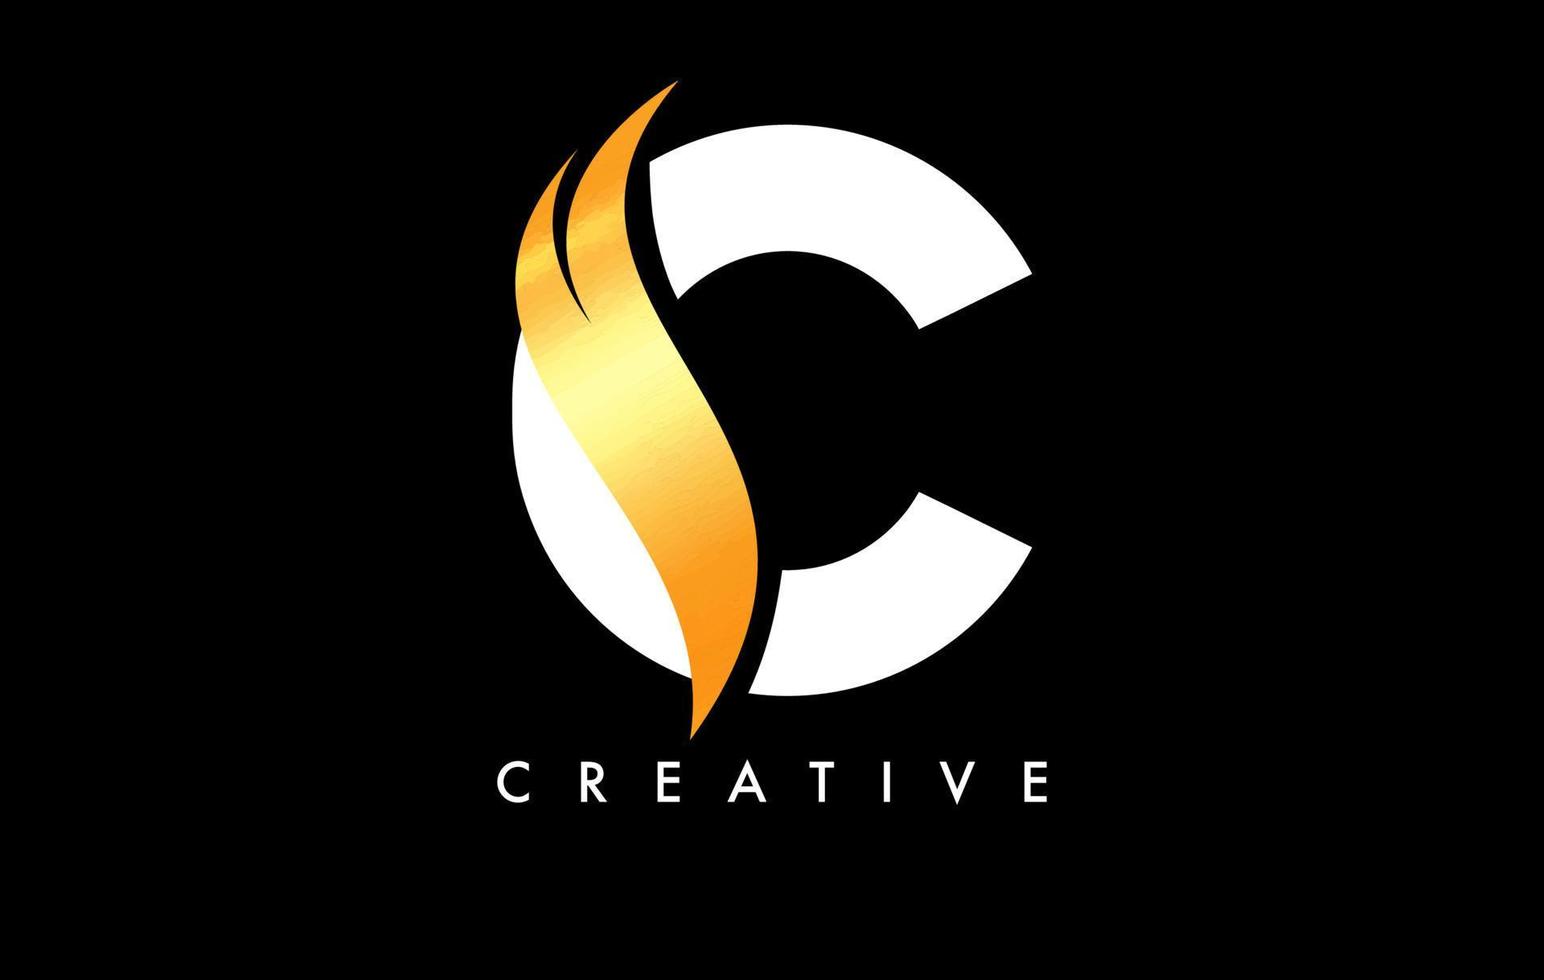 disegno dell'icona del logo della lettera c con swoosh dorato e vettore di forma curva creativa